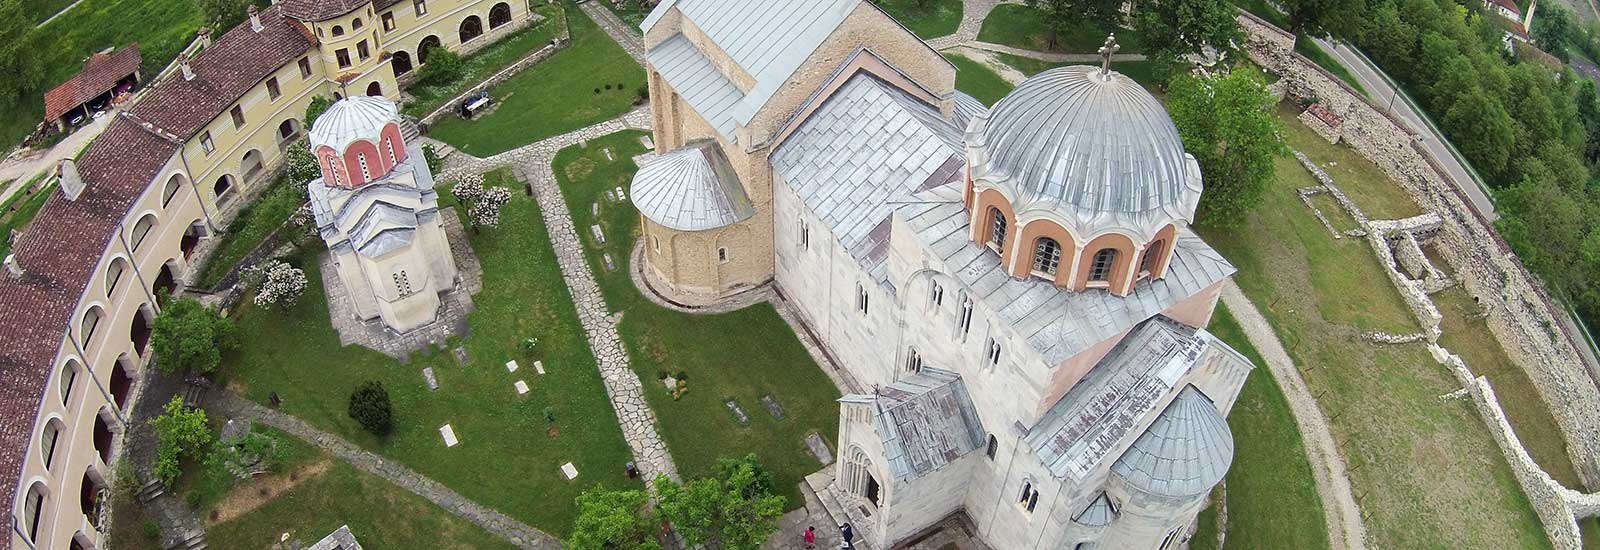 塞尔维亚人文景点教堂建筑